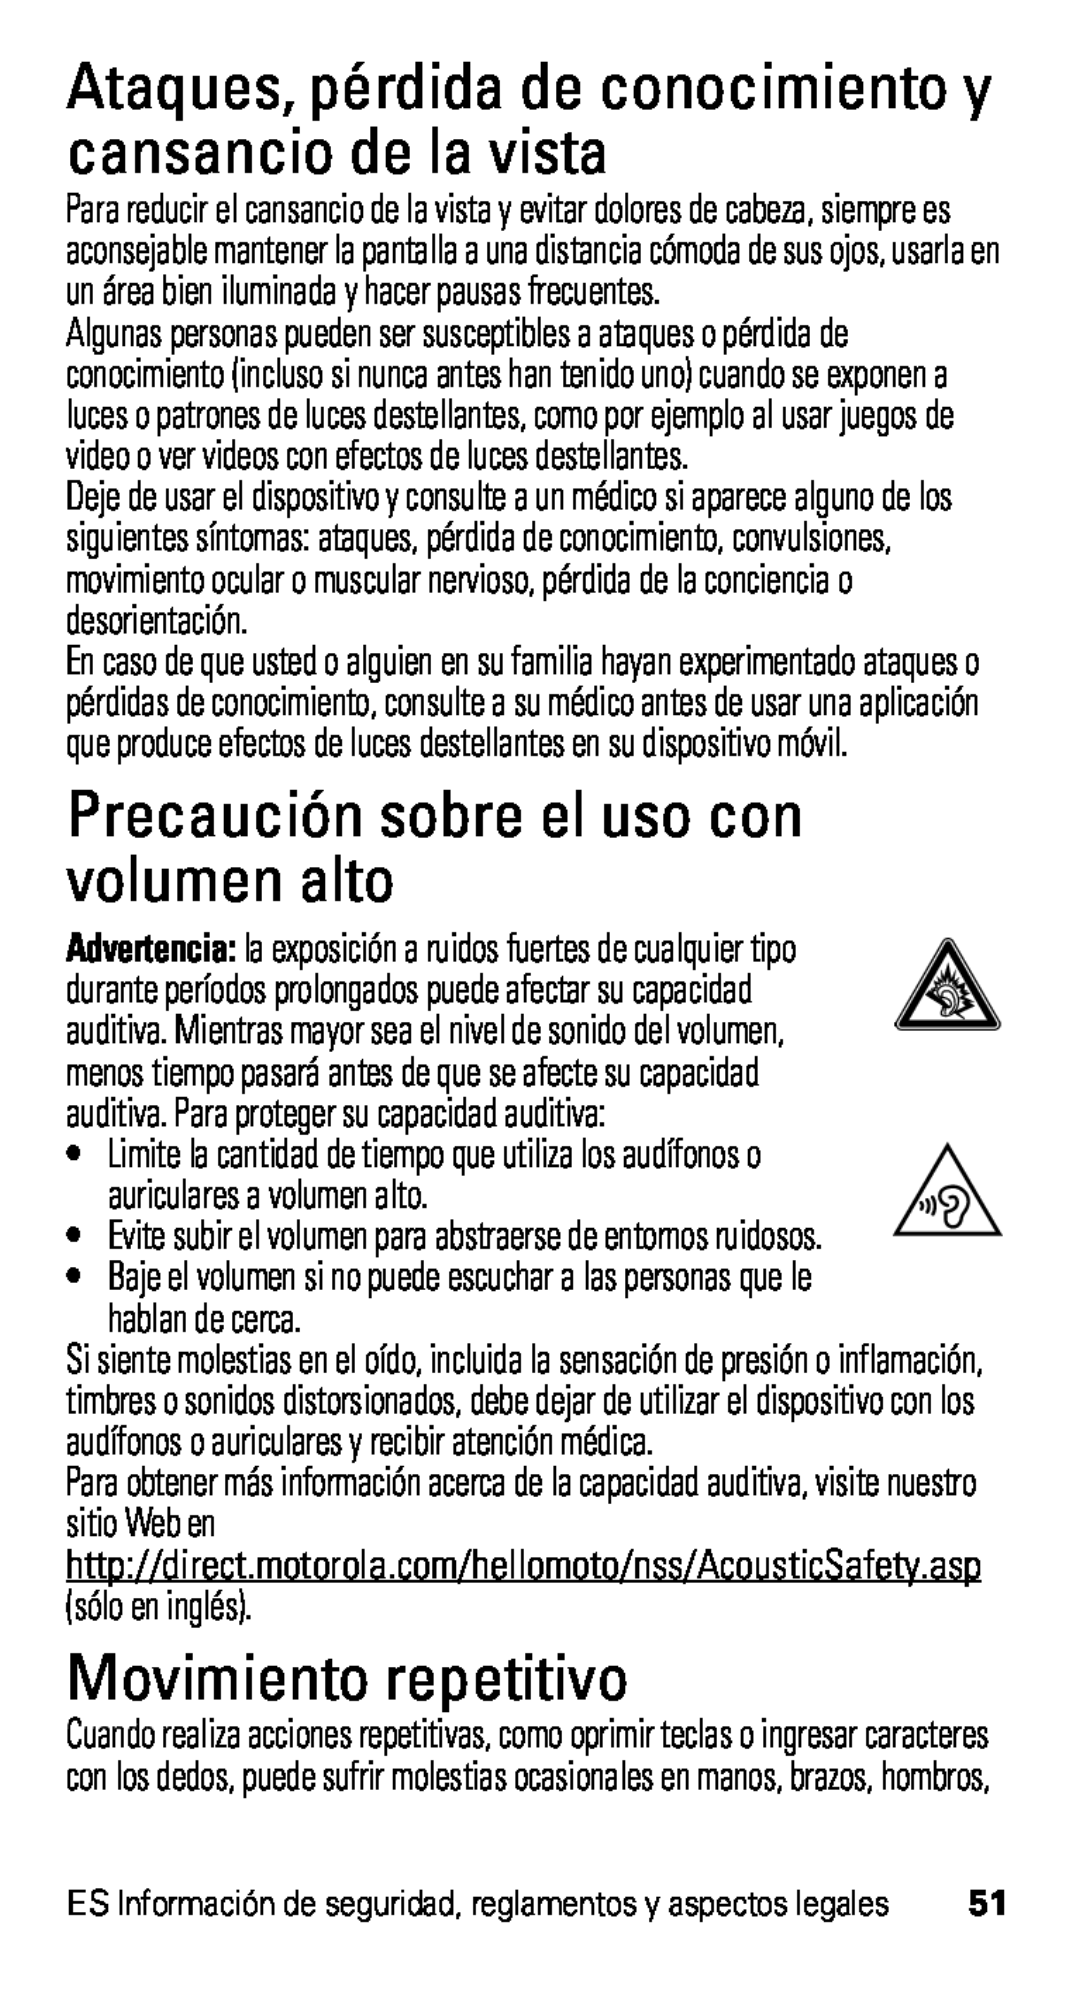 Motorola D1, XT915 manual Precaución sobre el uso con volumen alto, Movimiento repetitivo 